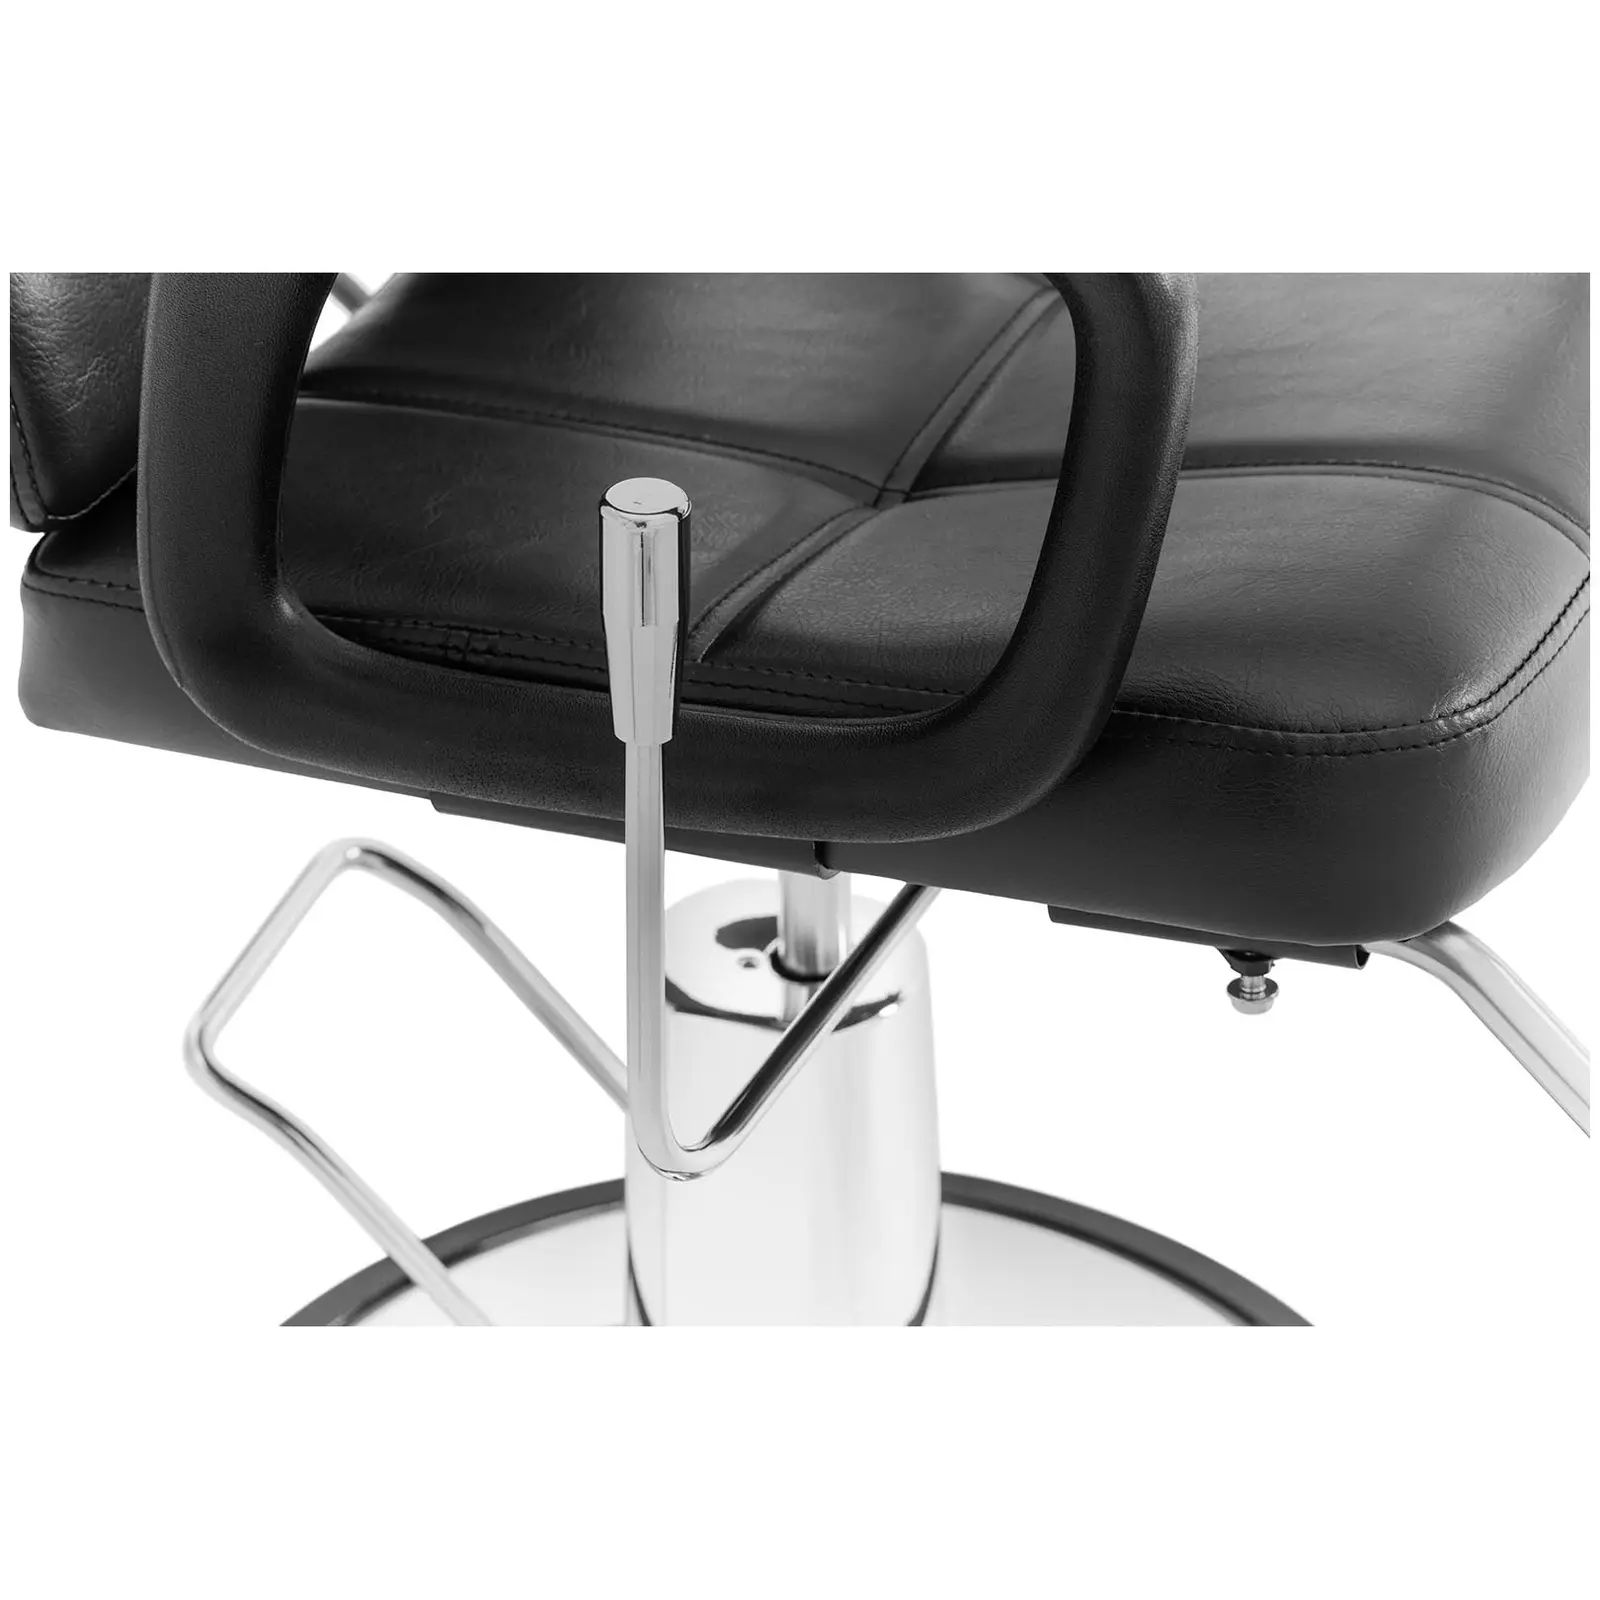 Salonski stol - Naslon za glavo in noge - 52 - 64 cm - 150 kg - črna